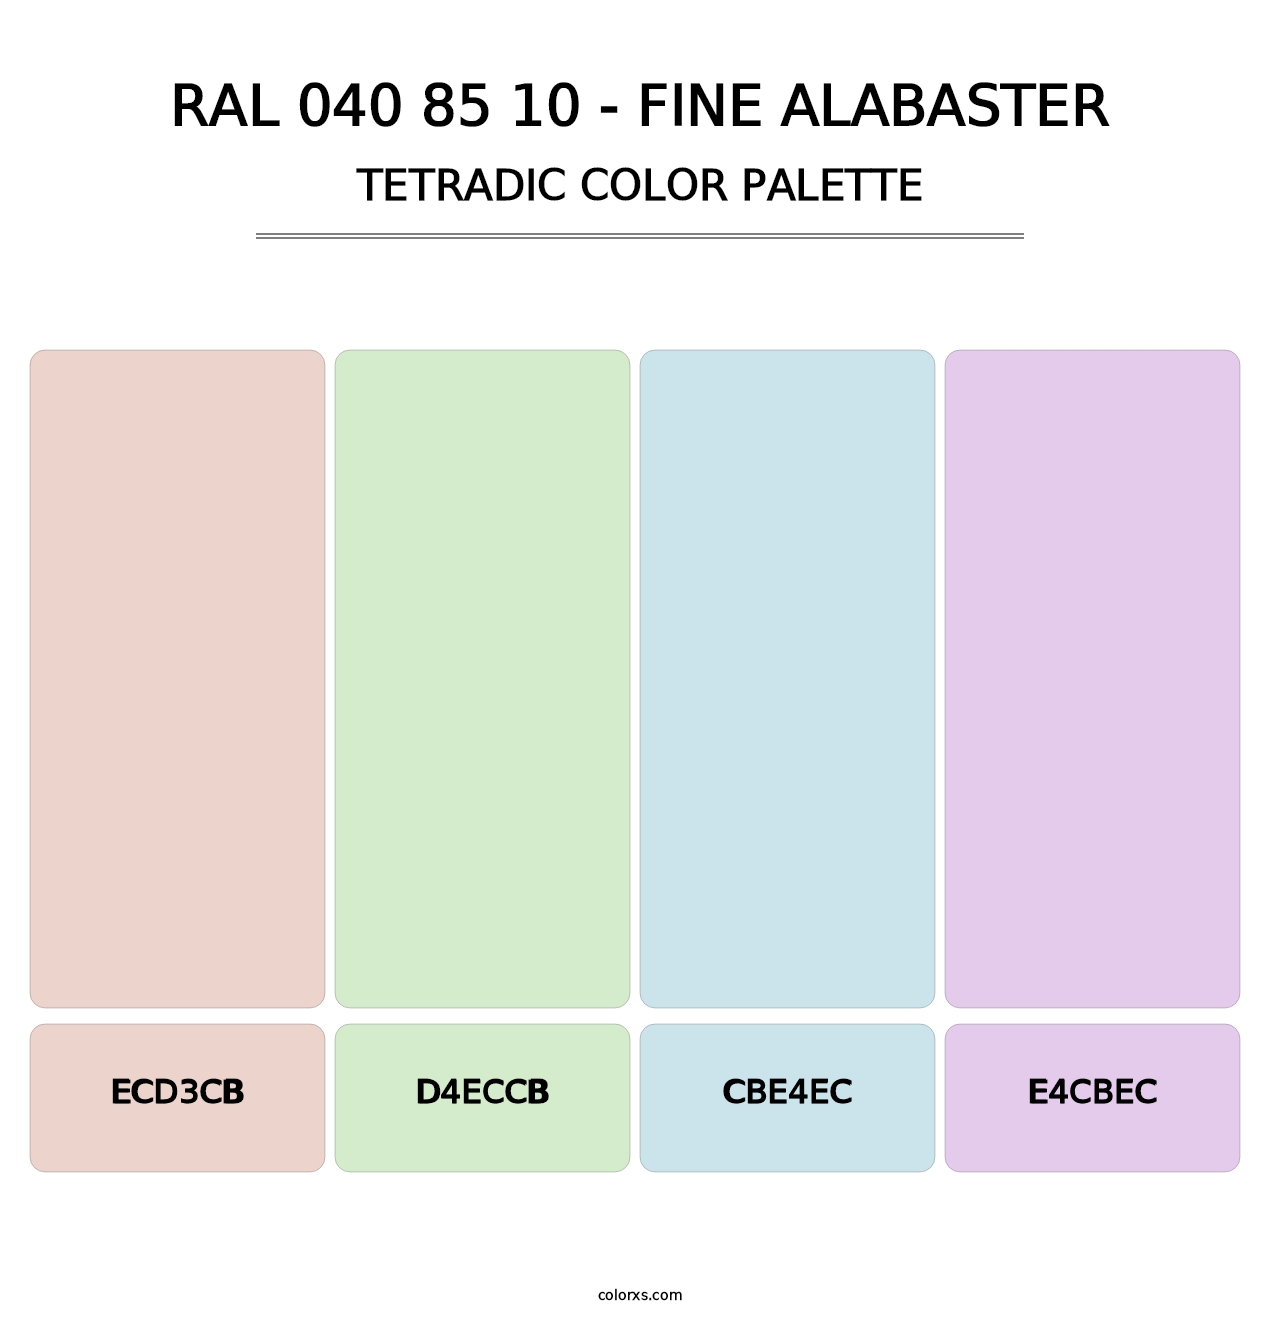 RAL 040 85 10 - Fine Alabaster - Tetradic Color Palette